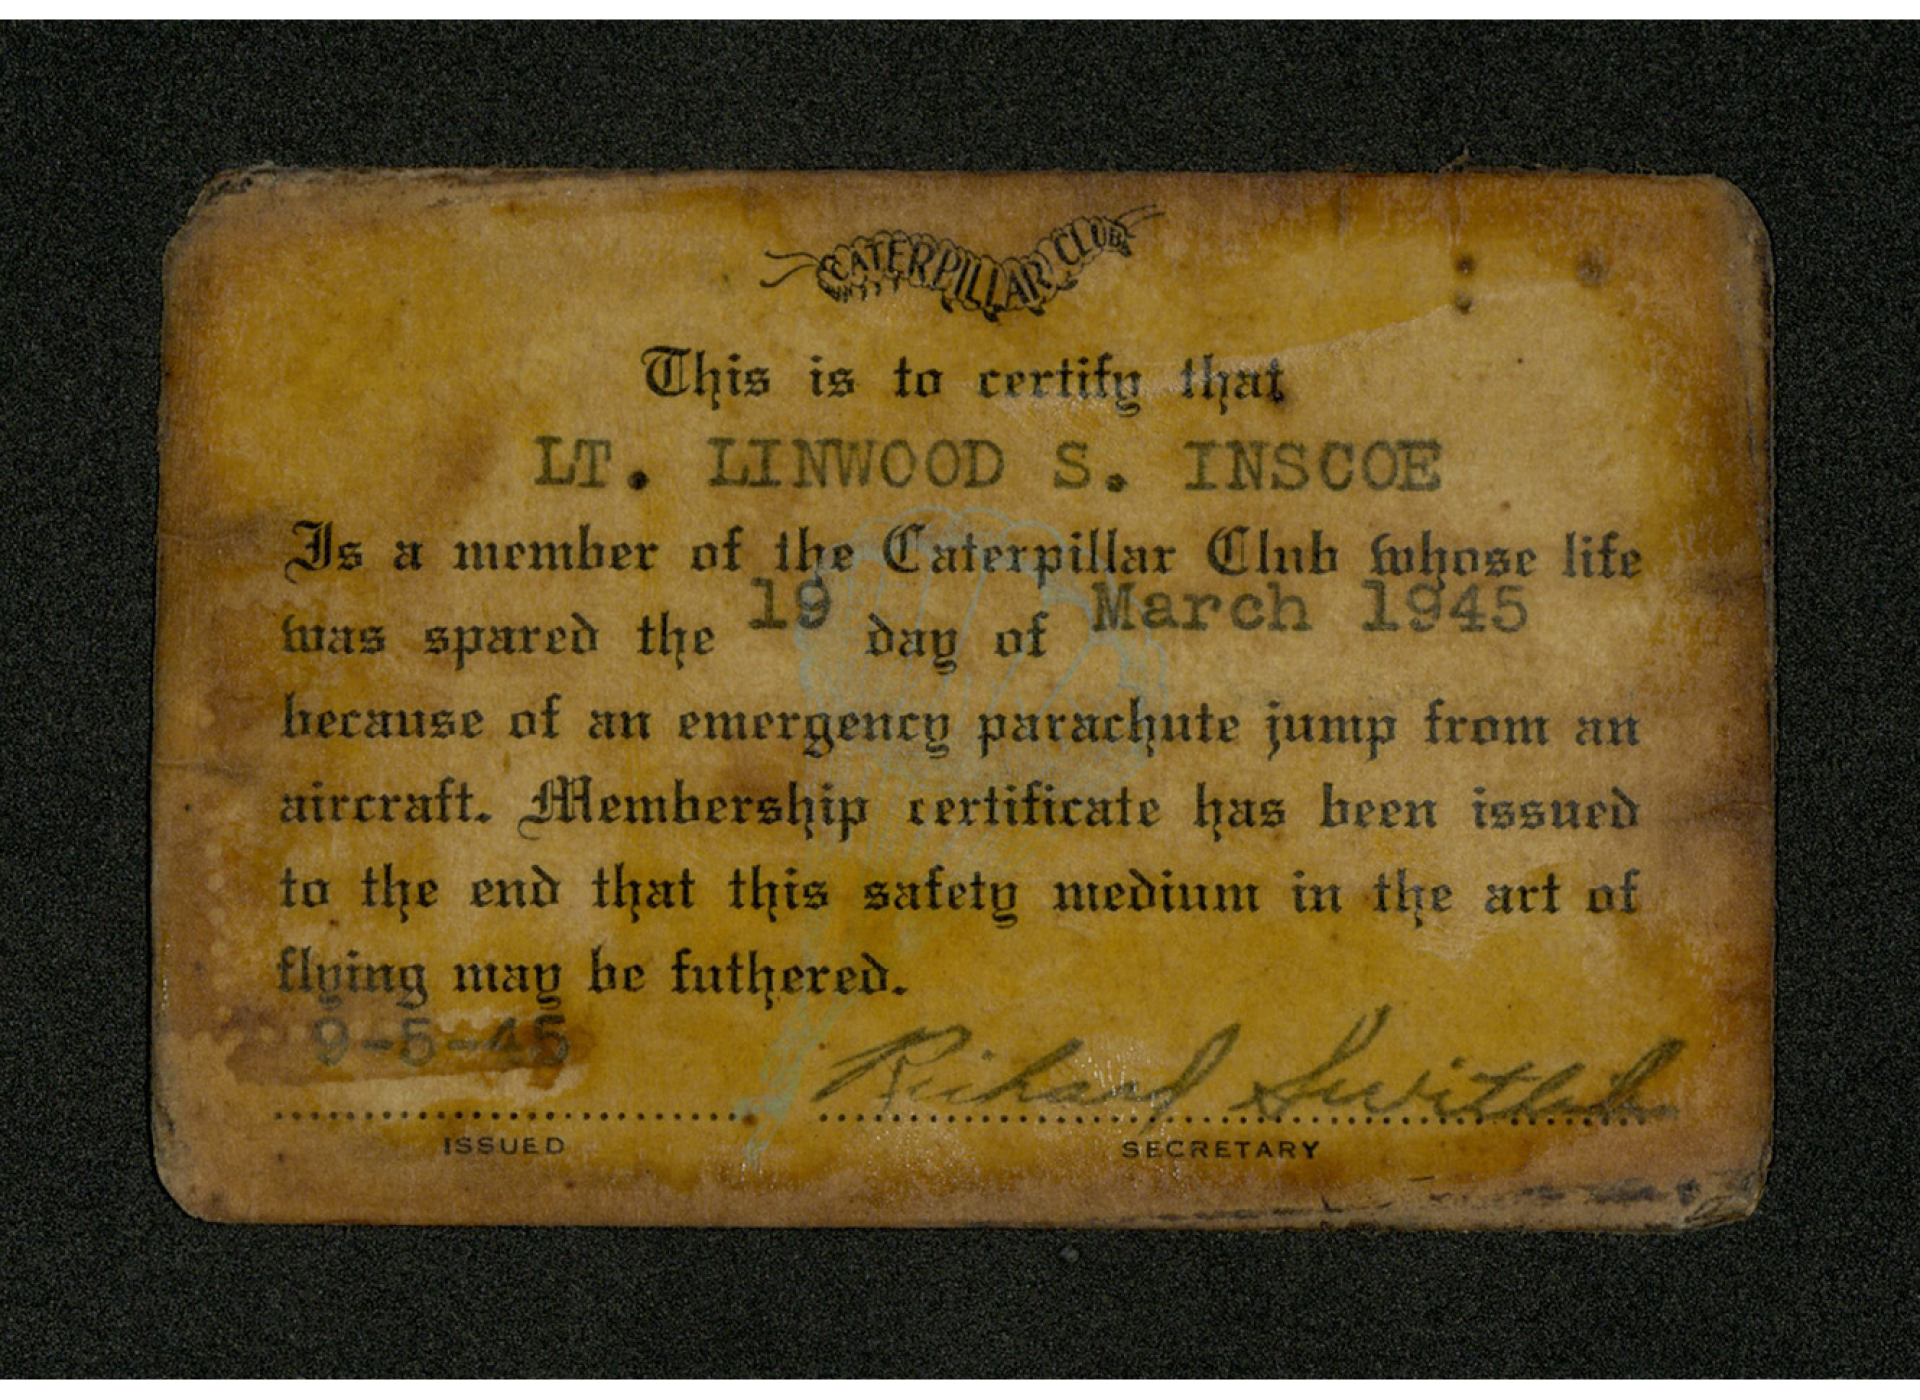 Lieutenant Linwood Inscoe’s membership card.